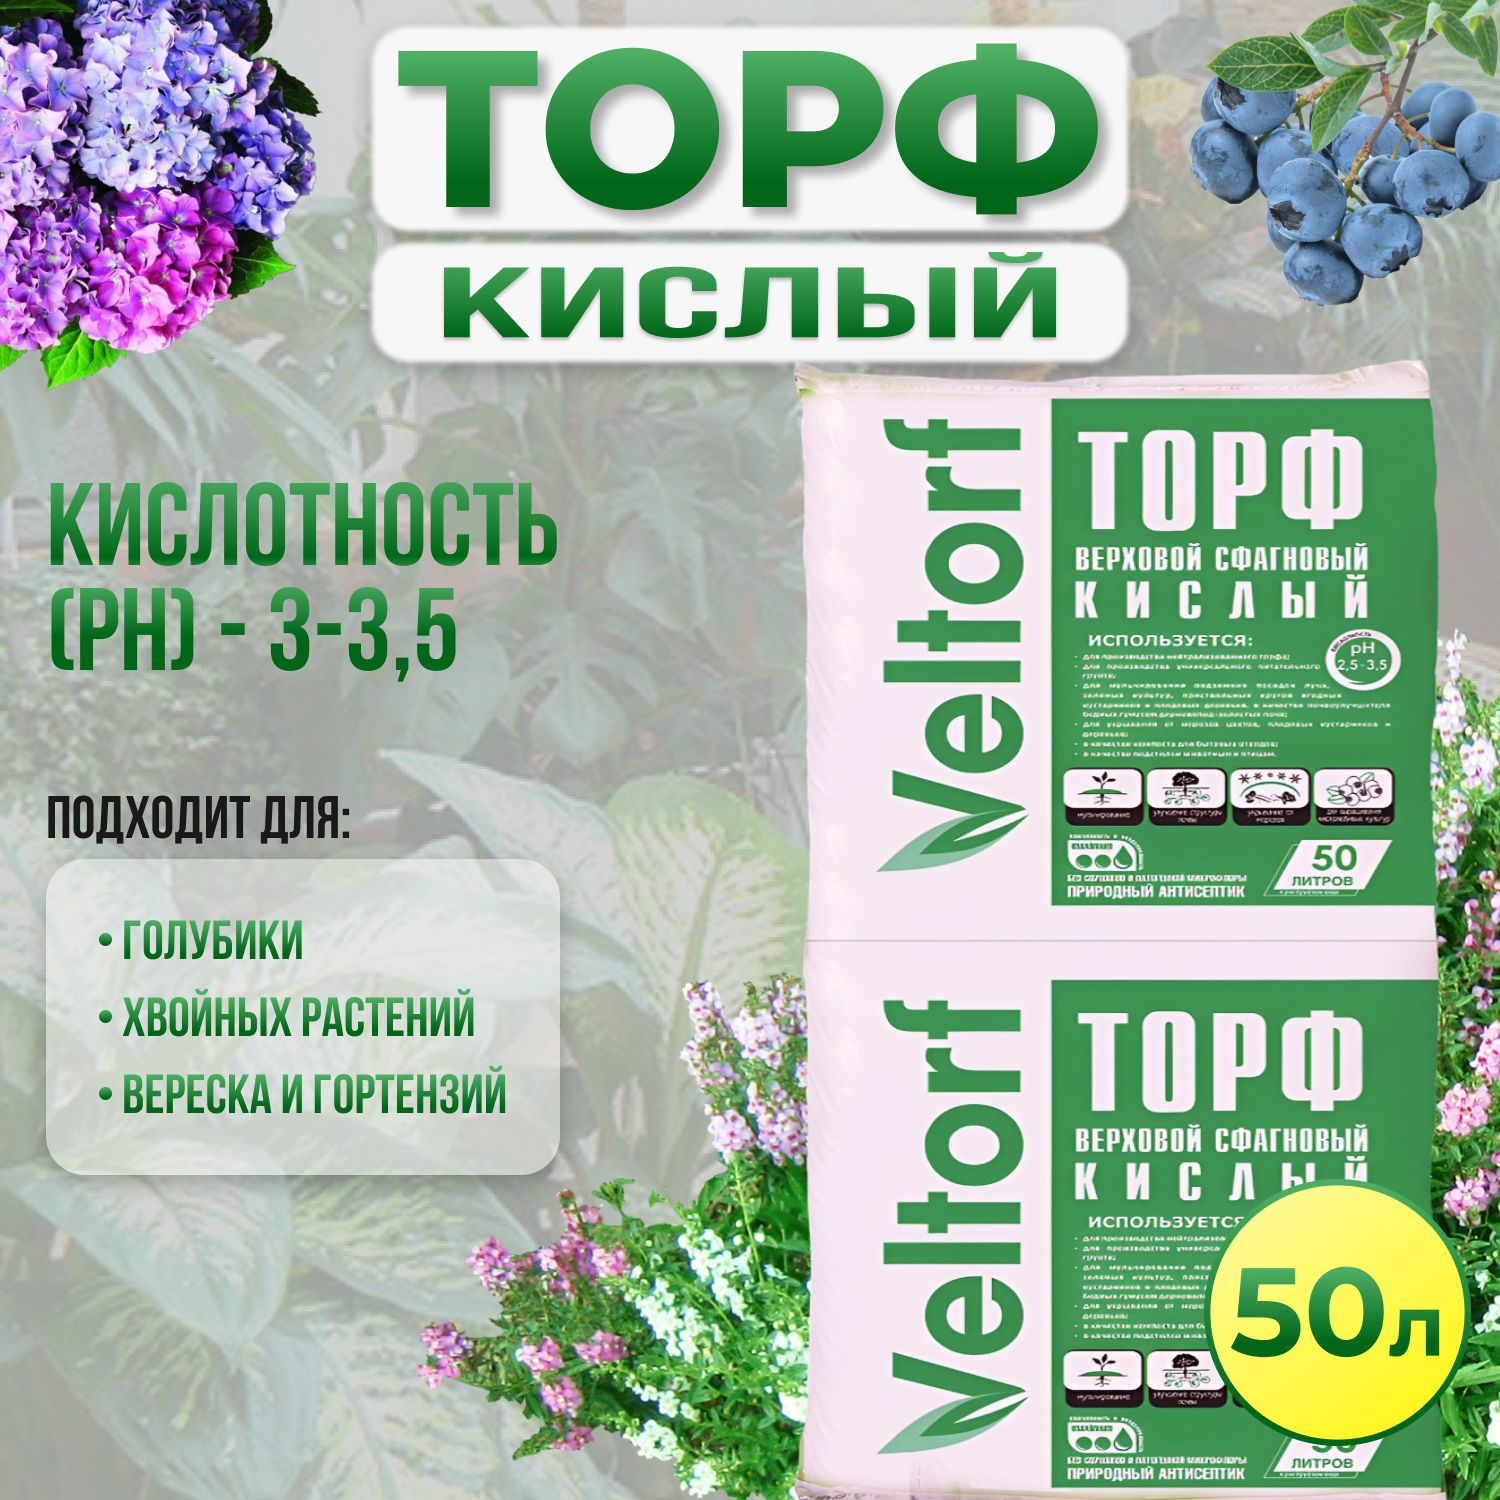 Торф КИСЛЫЙ верховой для голубики, цветов (гортензий, вереска), хвойныхрастений ВЕЛТОРФ 50 л. - купить по низкой цене в интернет-магазине OZON(1245754876)